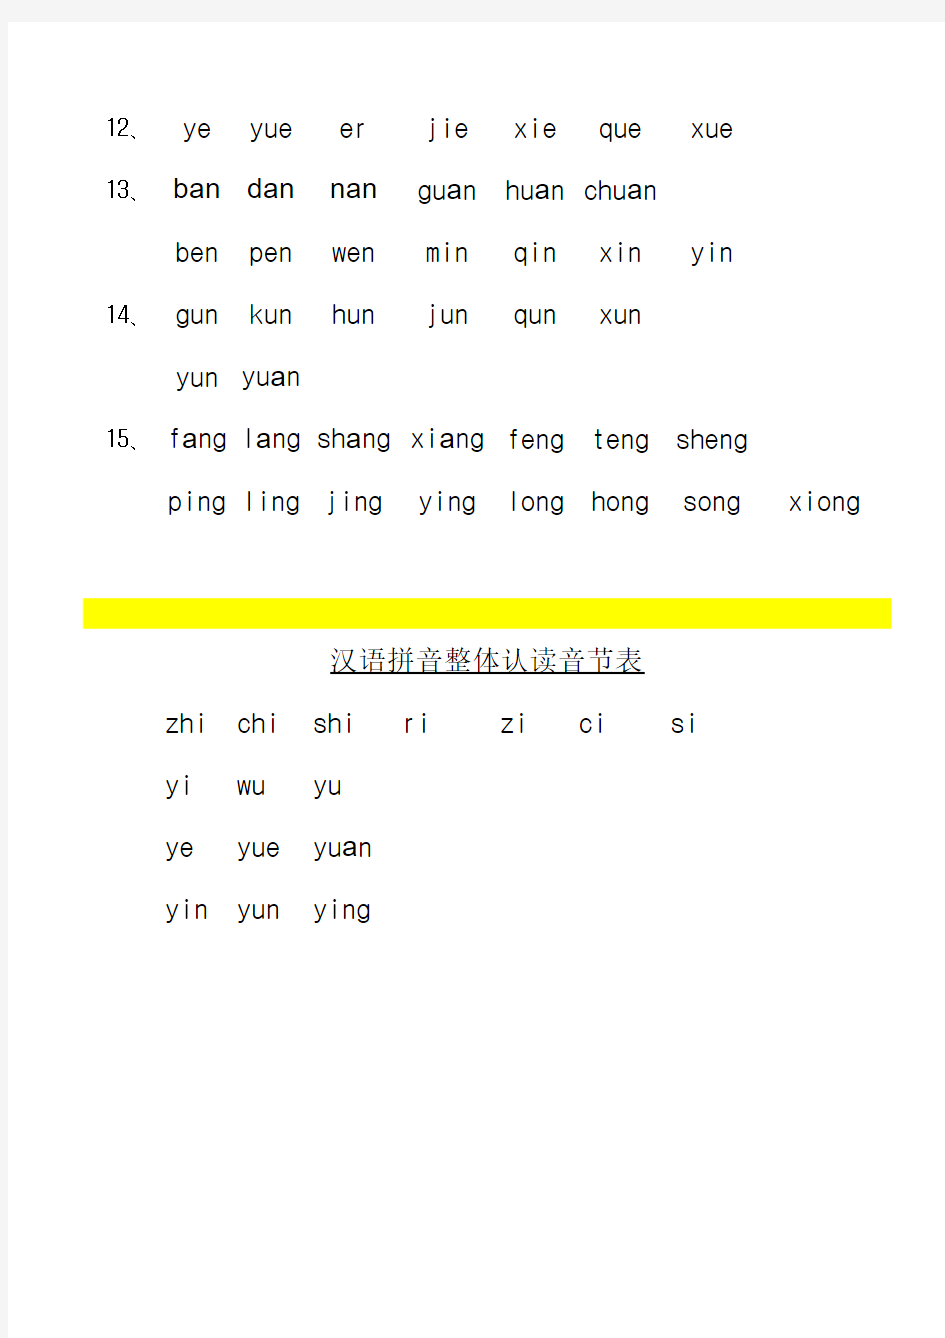 汉语拼音直呼音节表